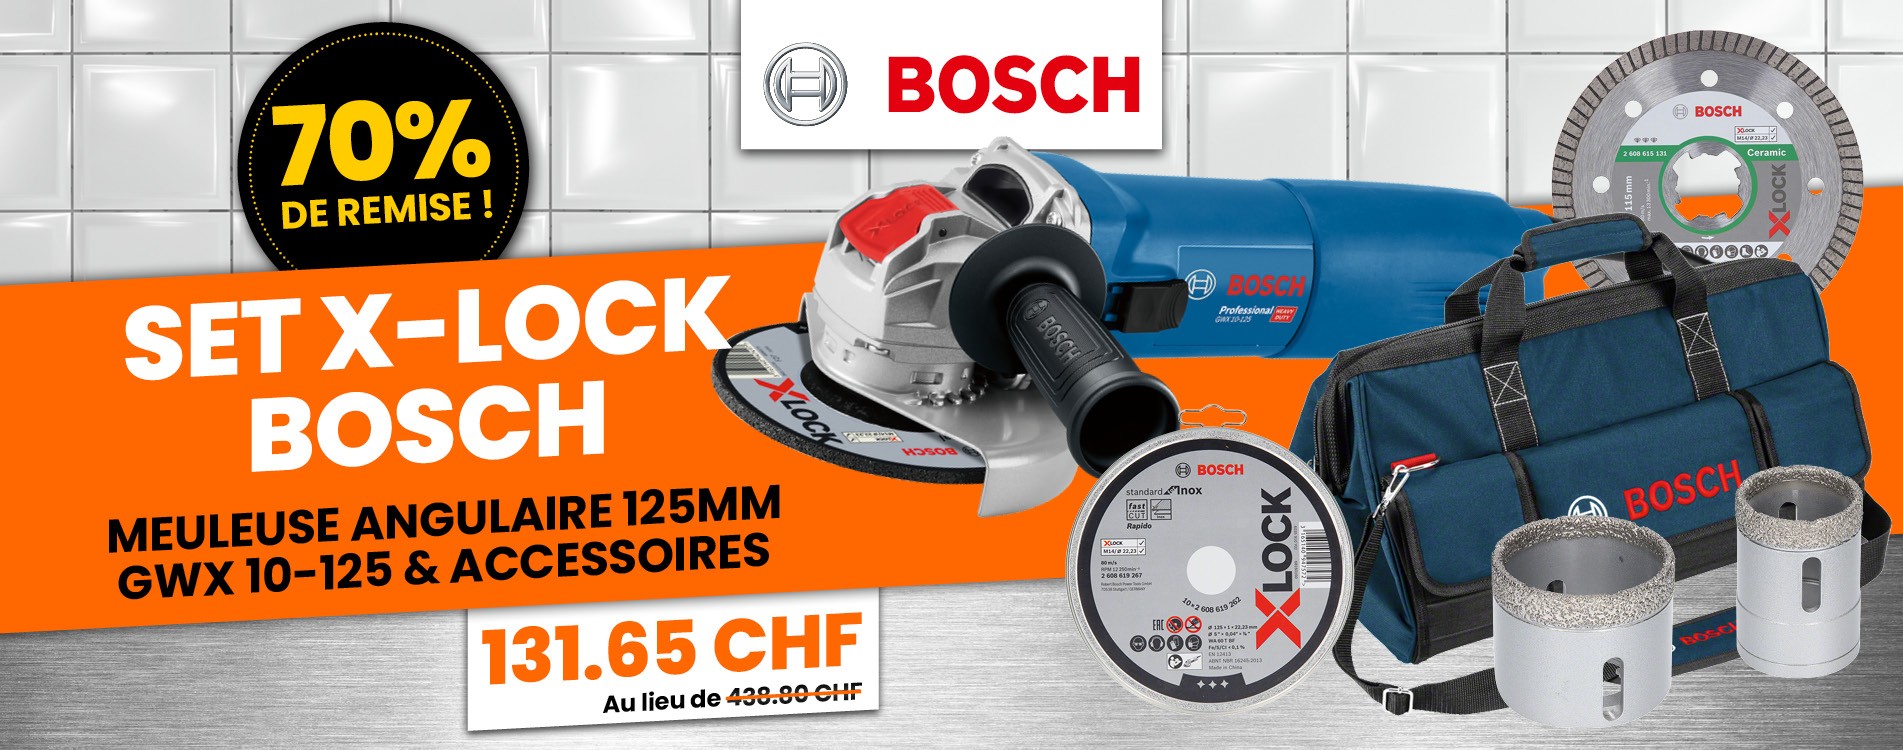 Set X-Lock Bosch Meuleuse Angulaire 125mm GWX 10-125 Et Accessoires